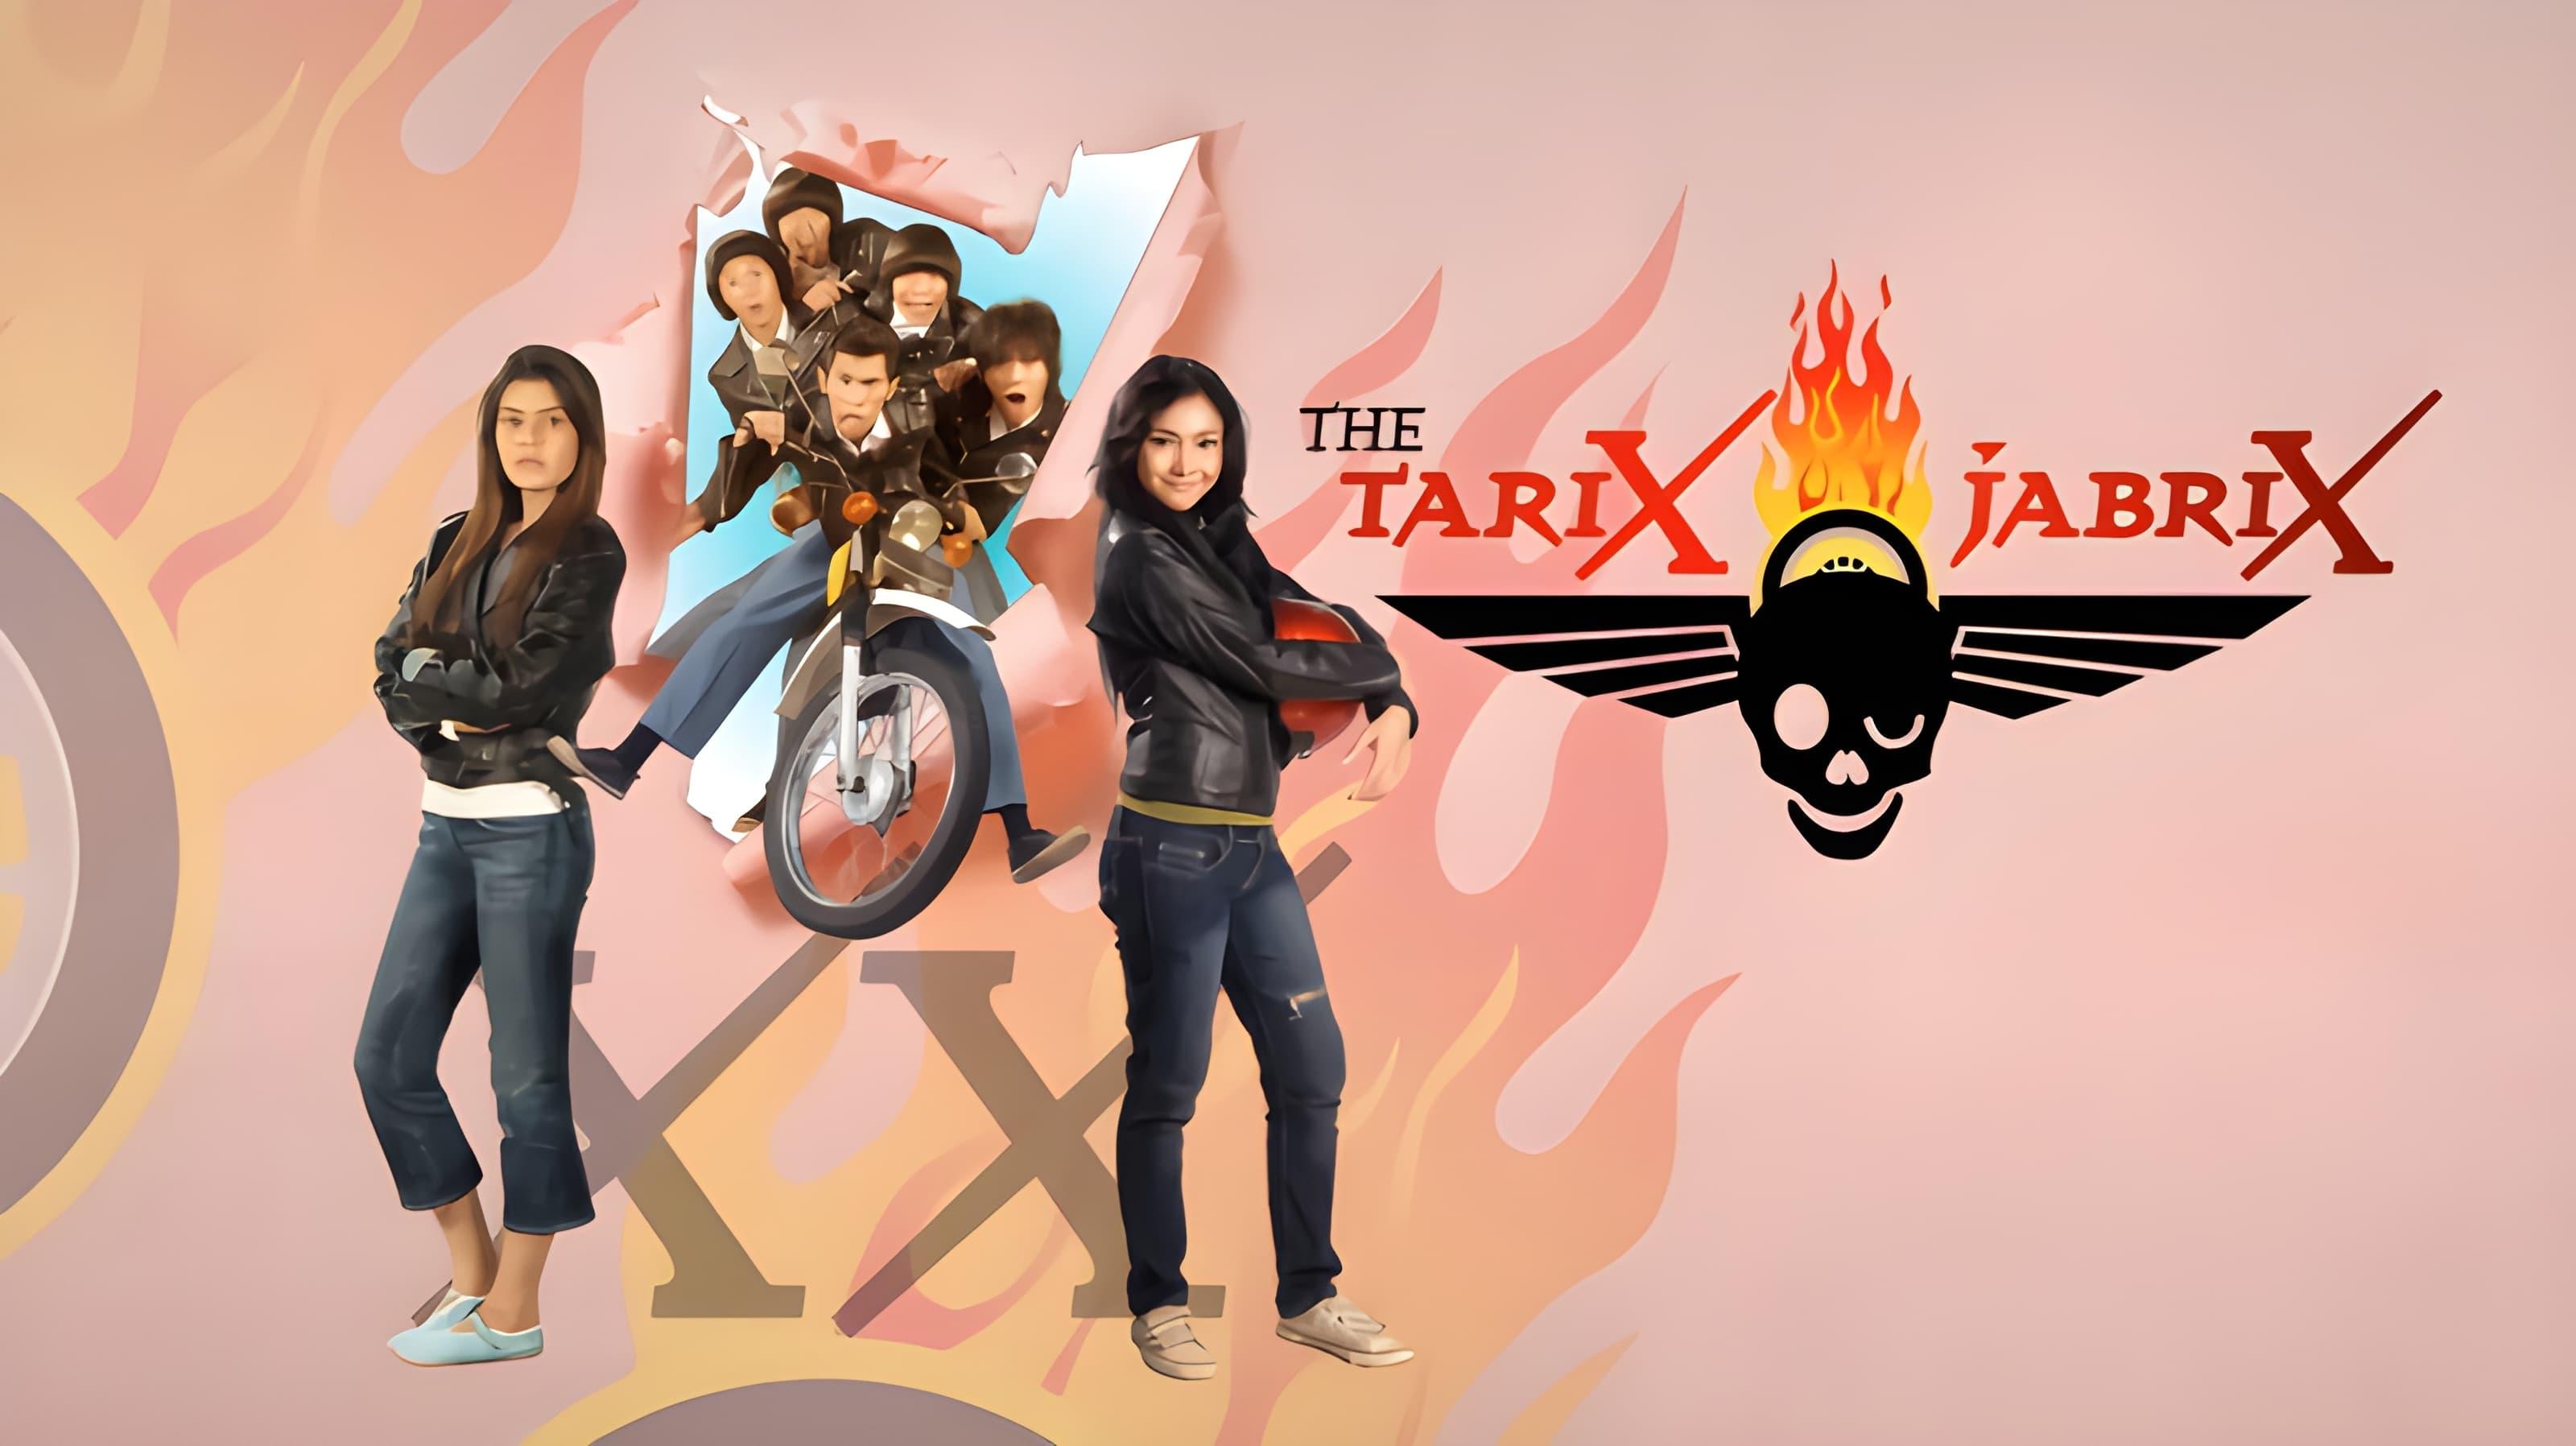 The Tarix Jabrix backdrop